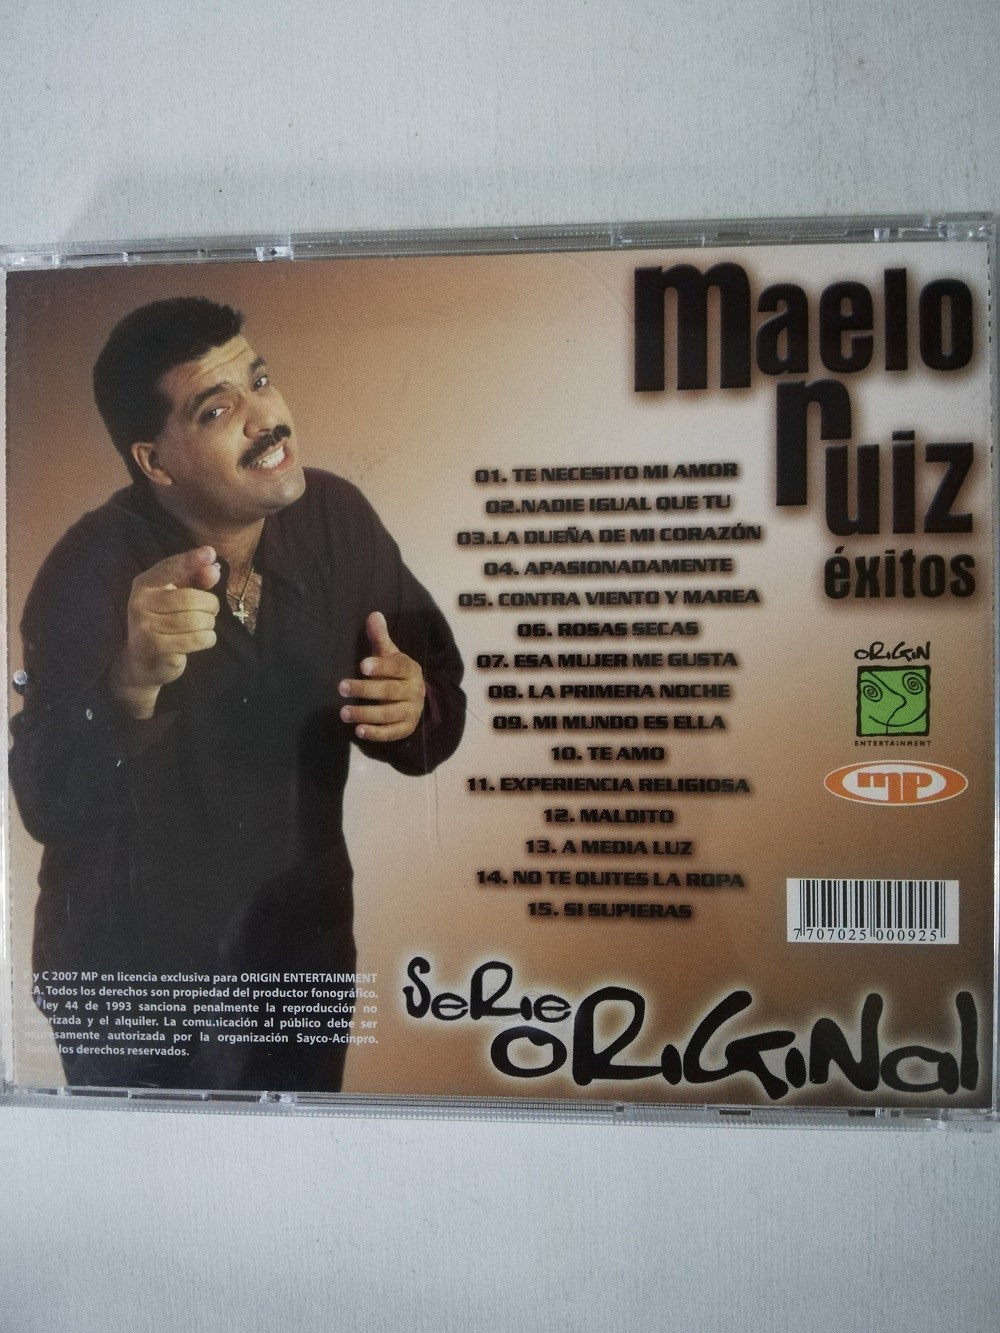 Imagen CD MAELO RUIZ - EXITOS 2